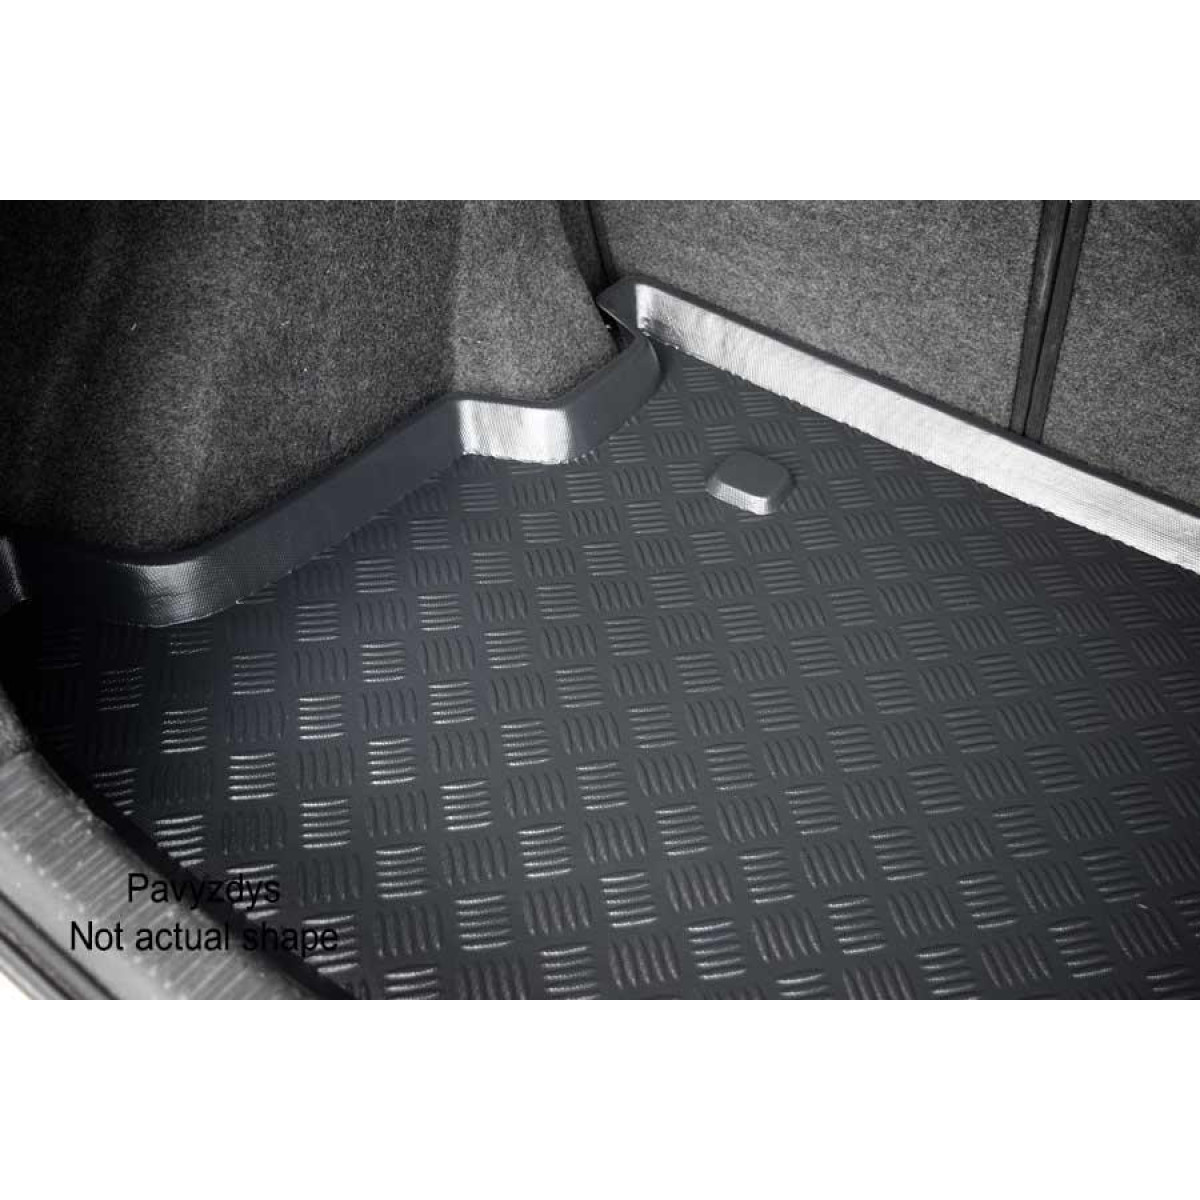 Plastikinis Bagažinės kilimėlis Ford Tourneo Connect nuo 2014m.5 vietų / 17037